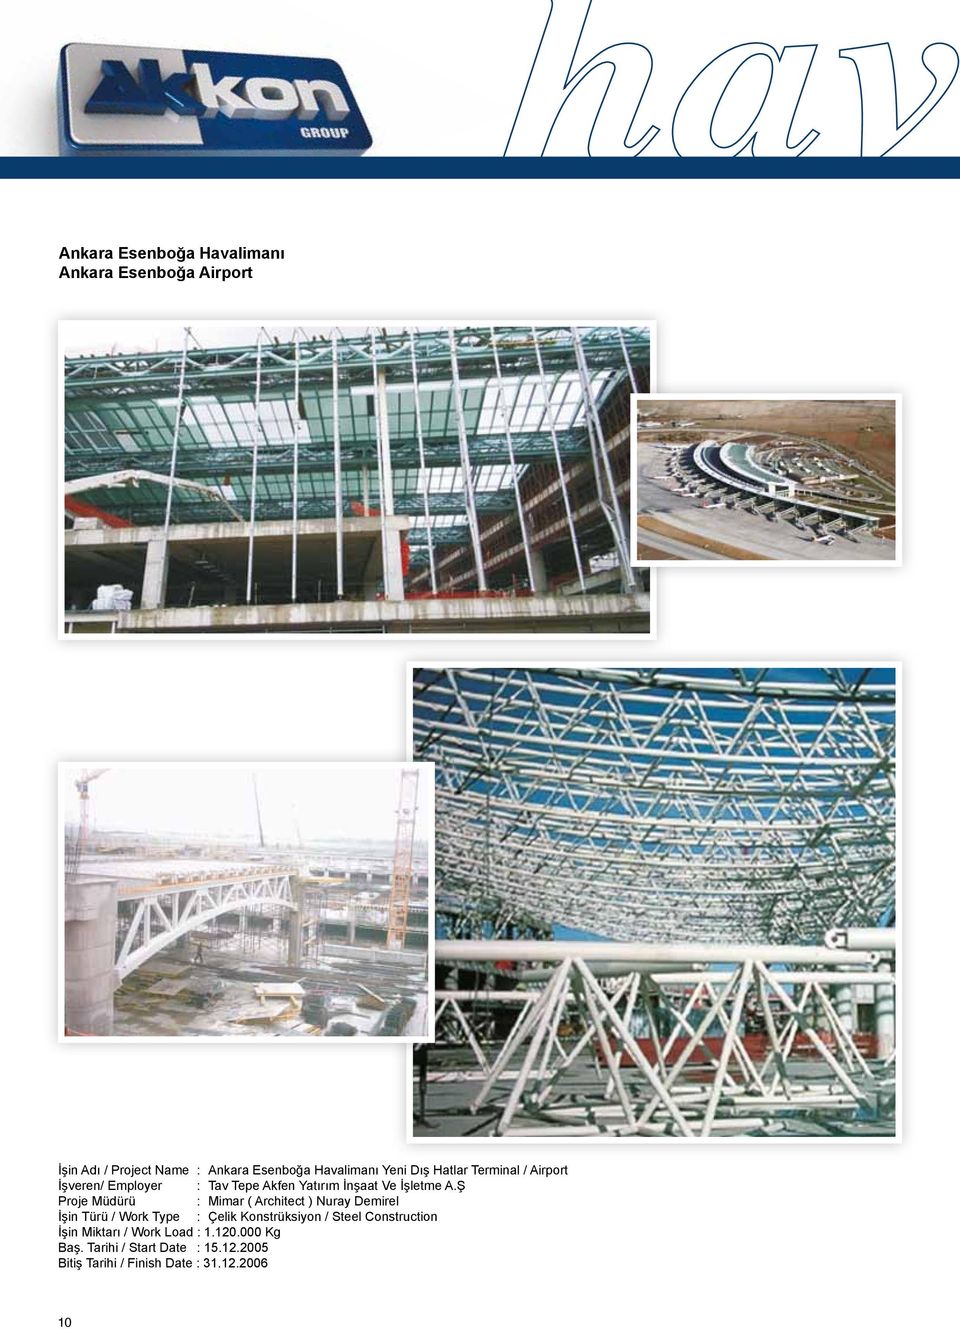 Ş Proje Müdürü : Mimar ( Architect ) Nuray Demirel İşin Türü / Work Type : Çelik Konstrüksiyon / Steel